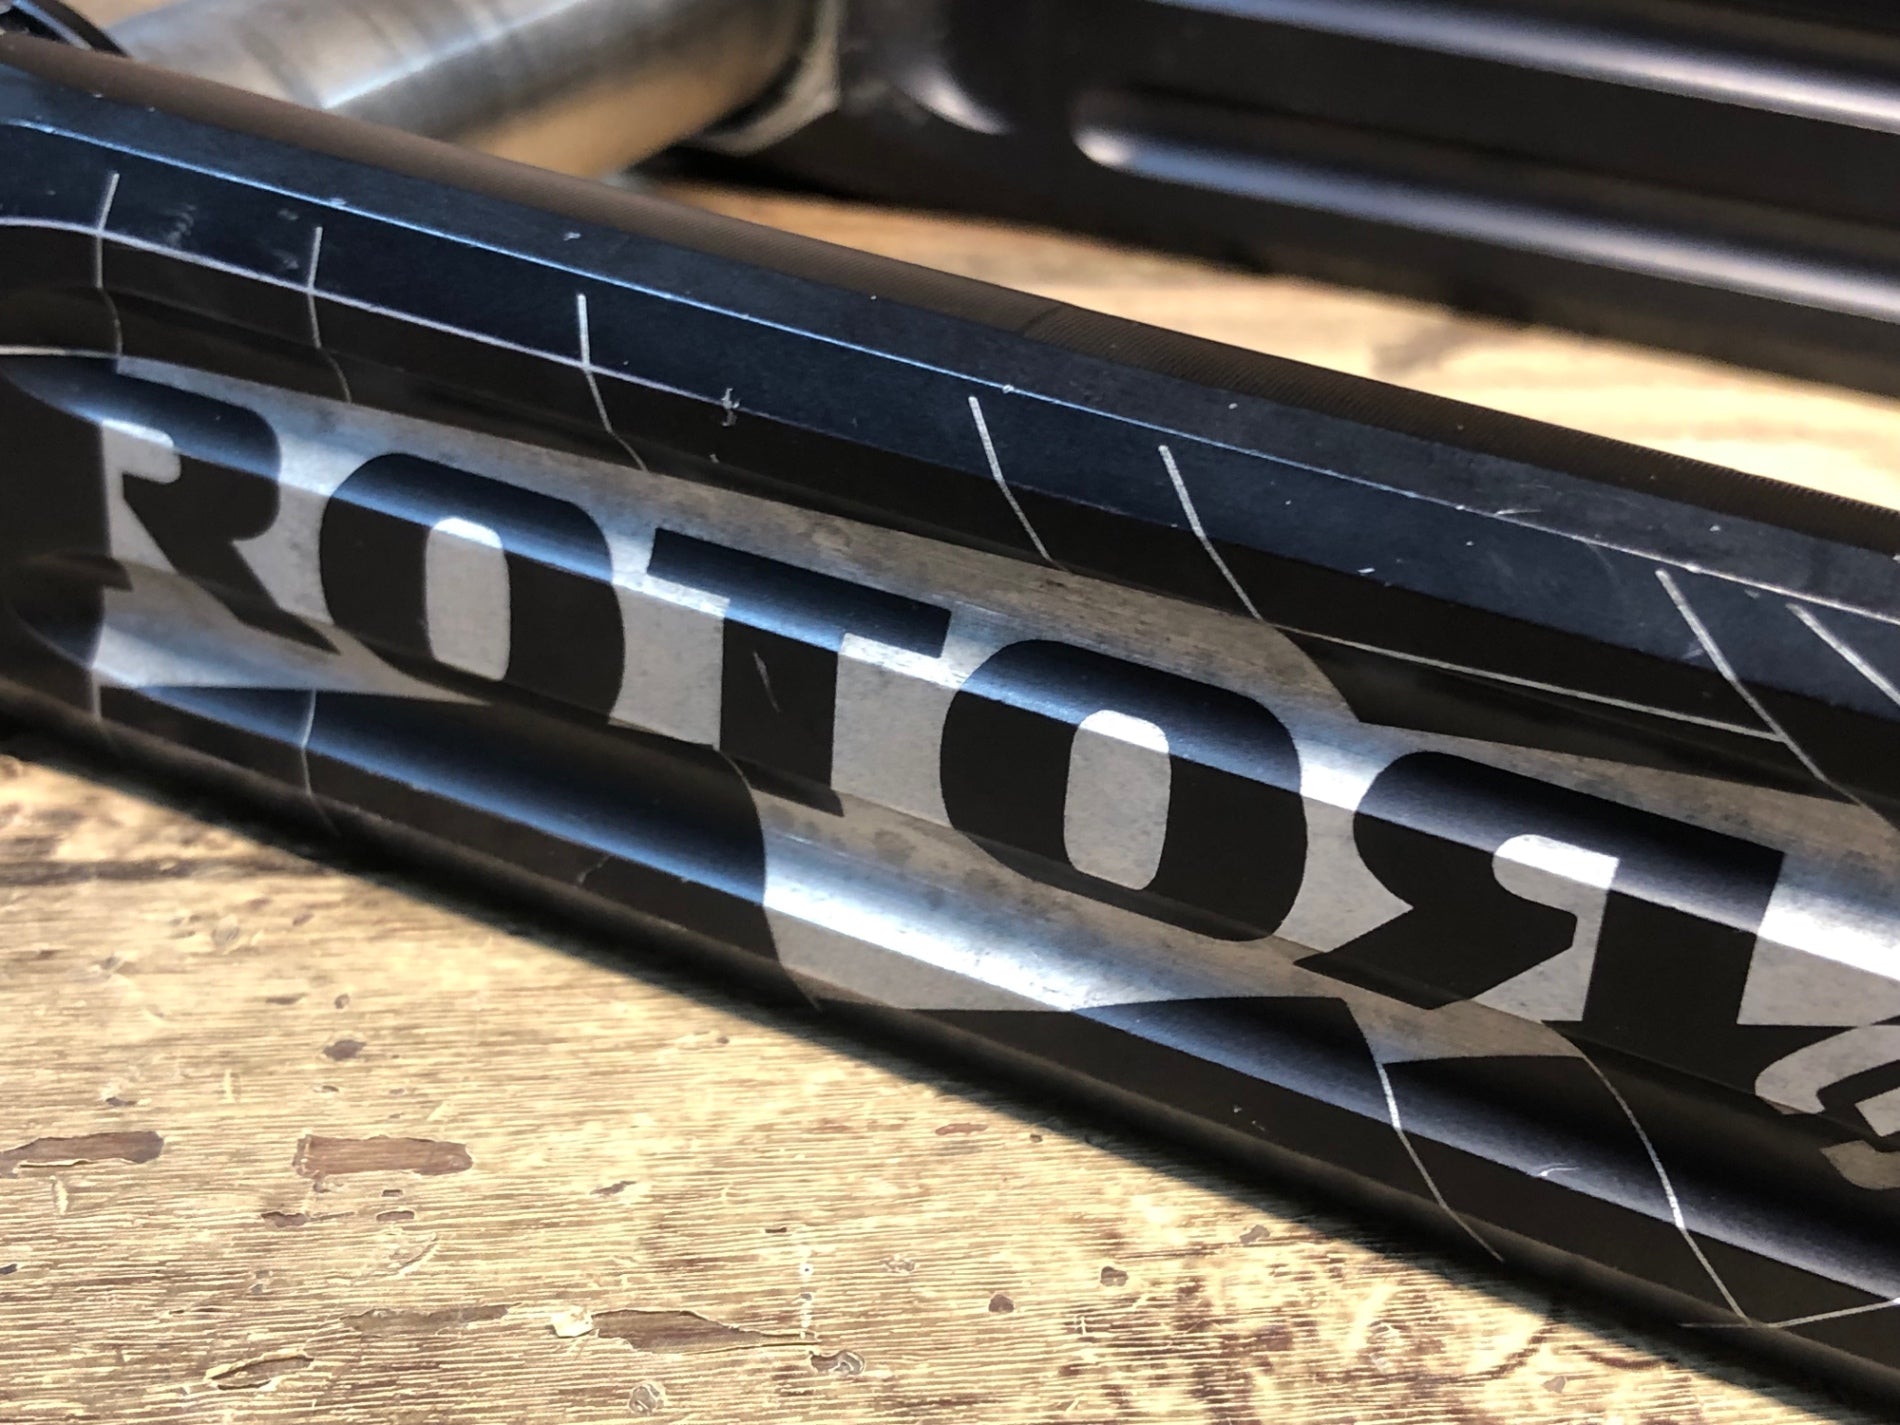 HX015 ローター ROTOR 3D CRANKS 24mmシャフト クランクアーム 165mm